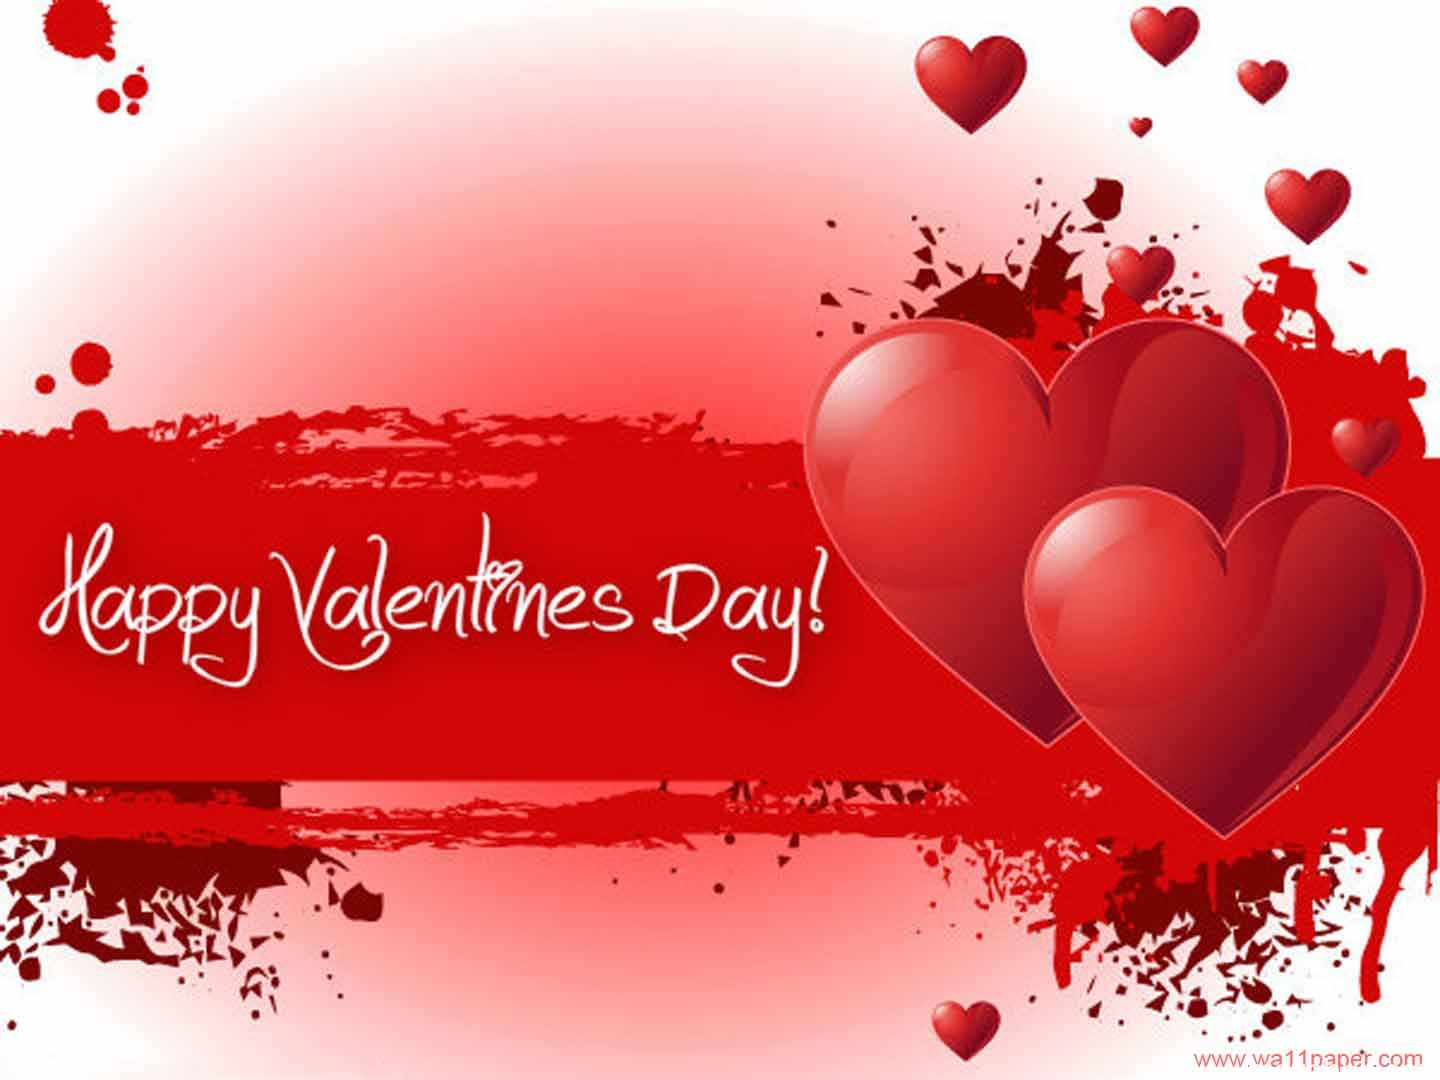 Valentine Day Specials Greeting 2015